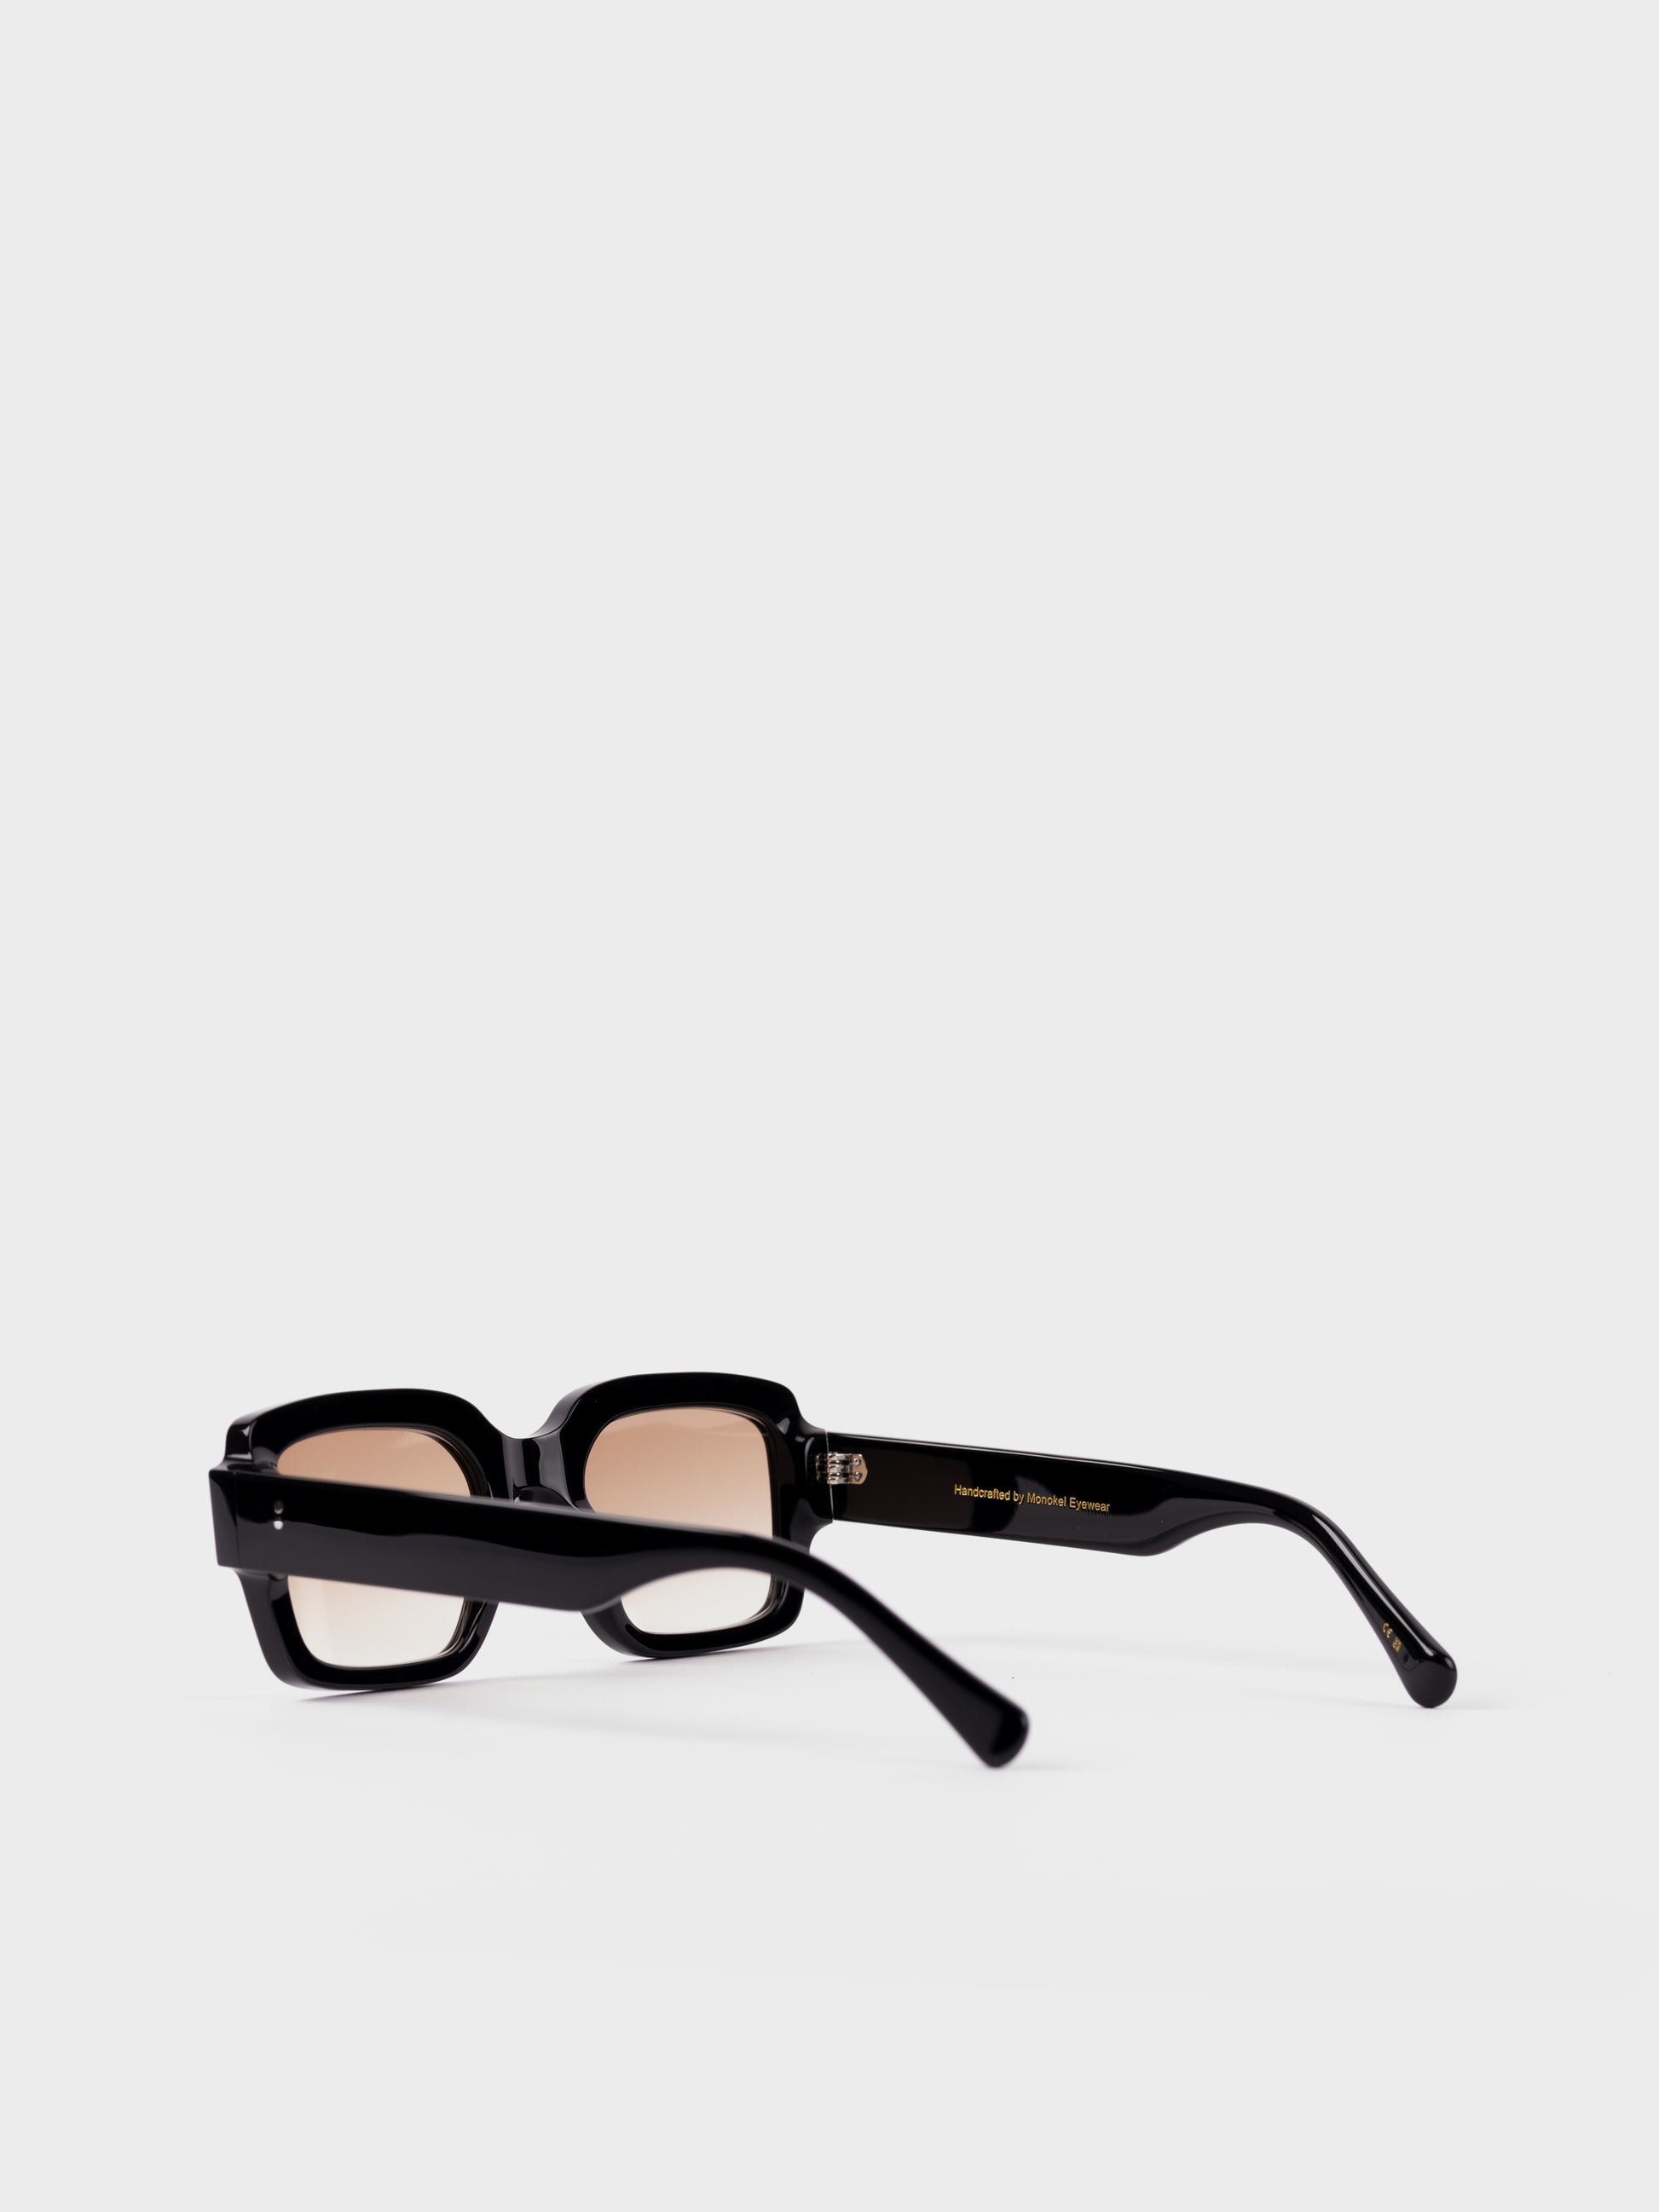 Monokel Sunglasses - Apollo Black/Brown Lens